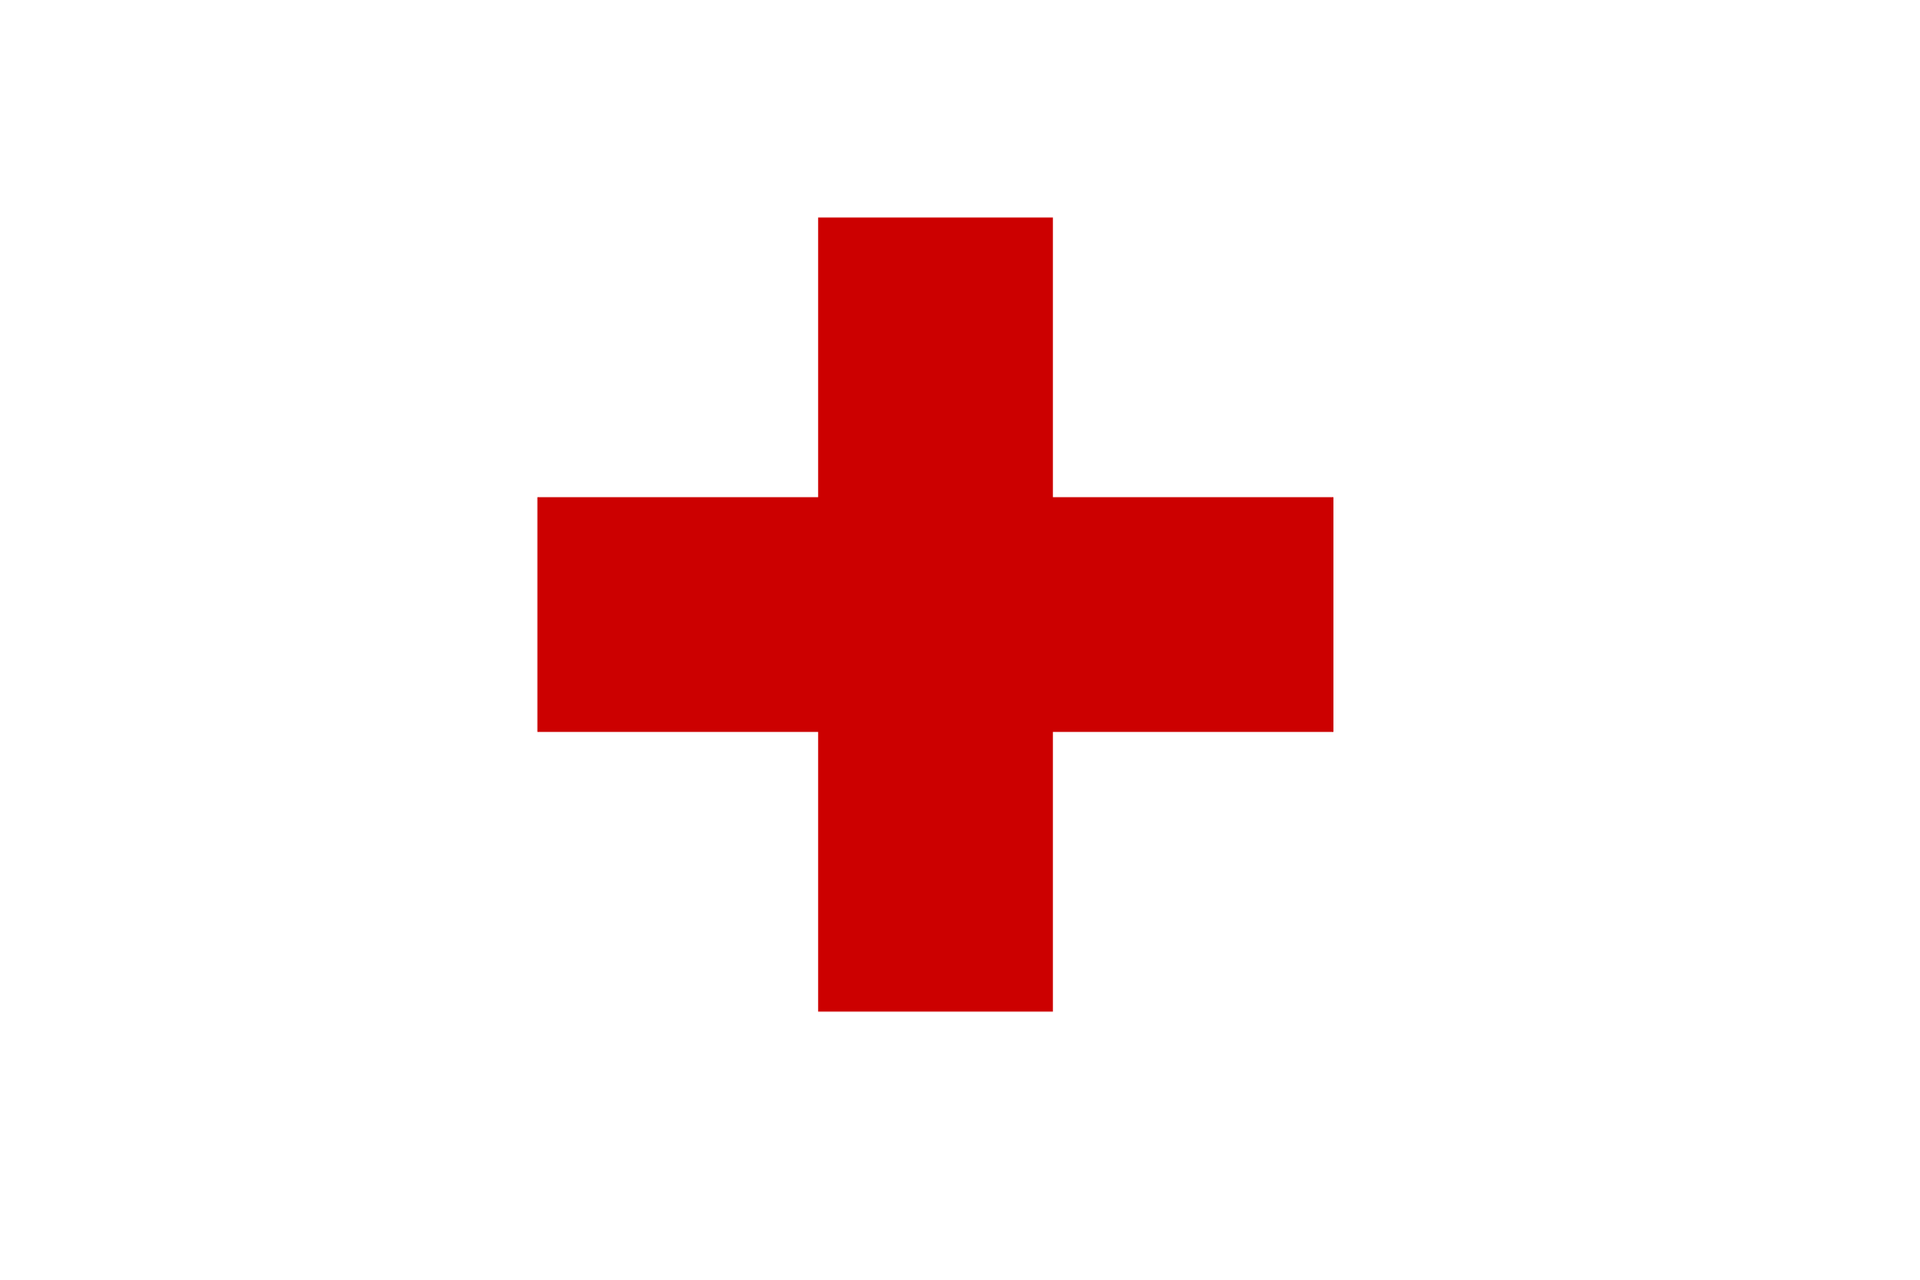 Galeria składa się z 4 czerwonych symboli. Pierwszy symbol: czerwony krzyż o równych ramionach.